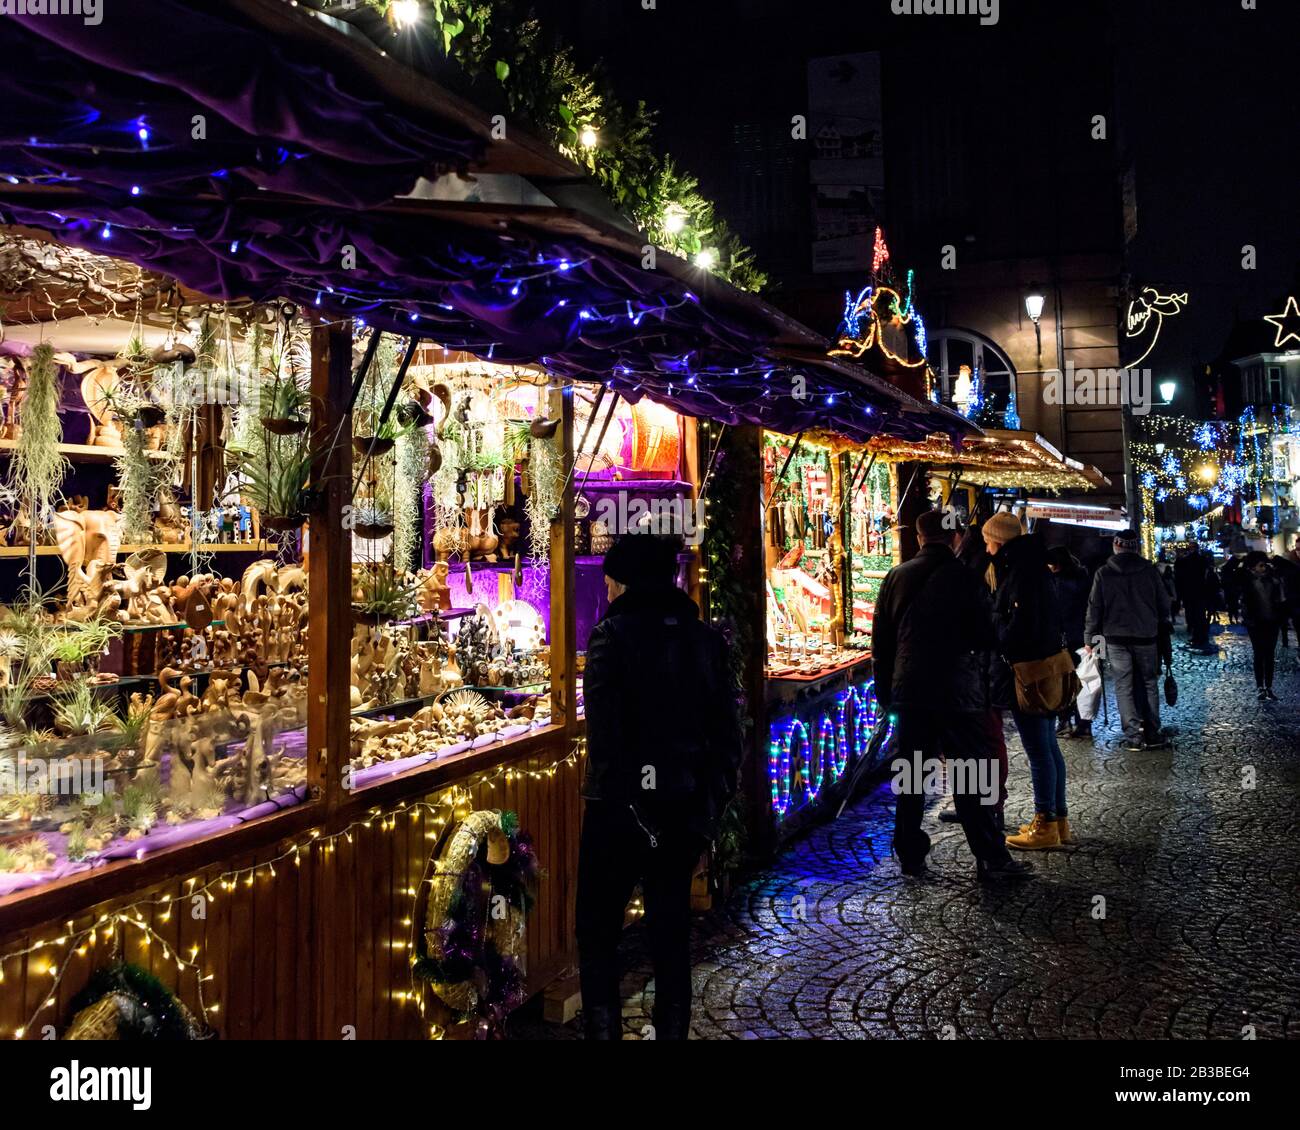 France, STRASBOURG - 20 DÉCEMBRE 2017: Les gens qui visitent le marché de Noël. Le marché de Noël se tient chaque année dans tout le centre de Strasbourg. Banque D'Images